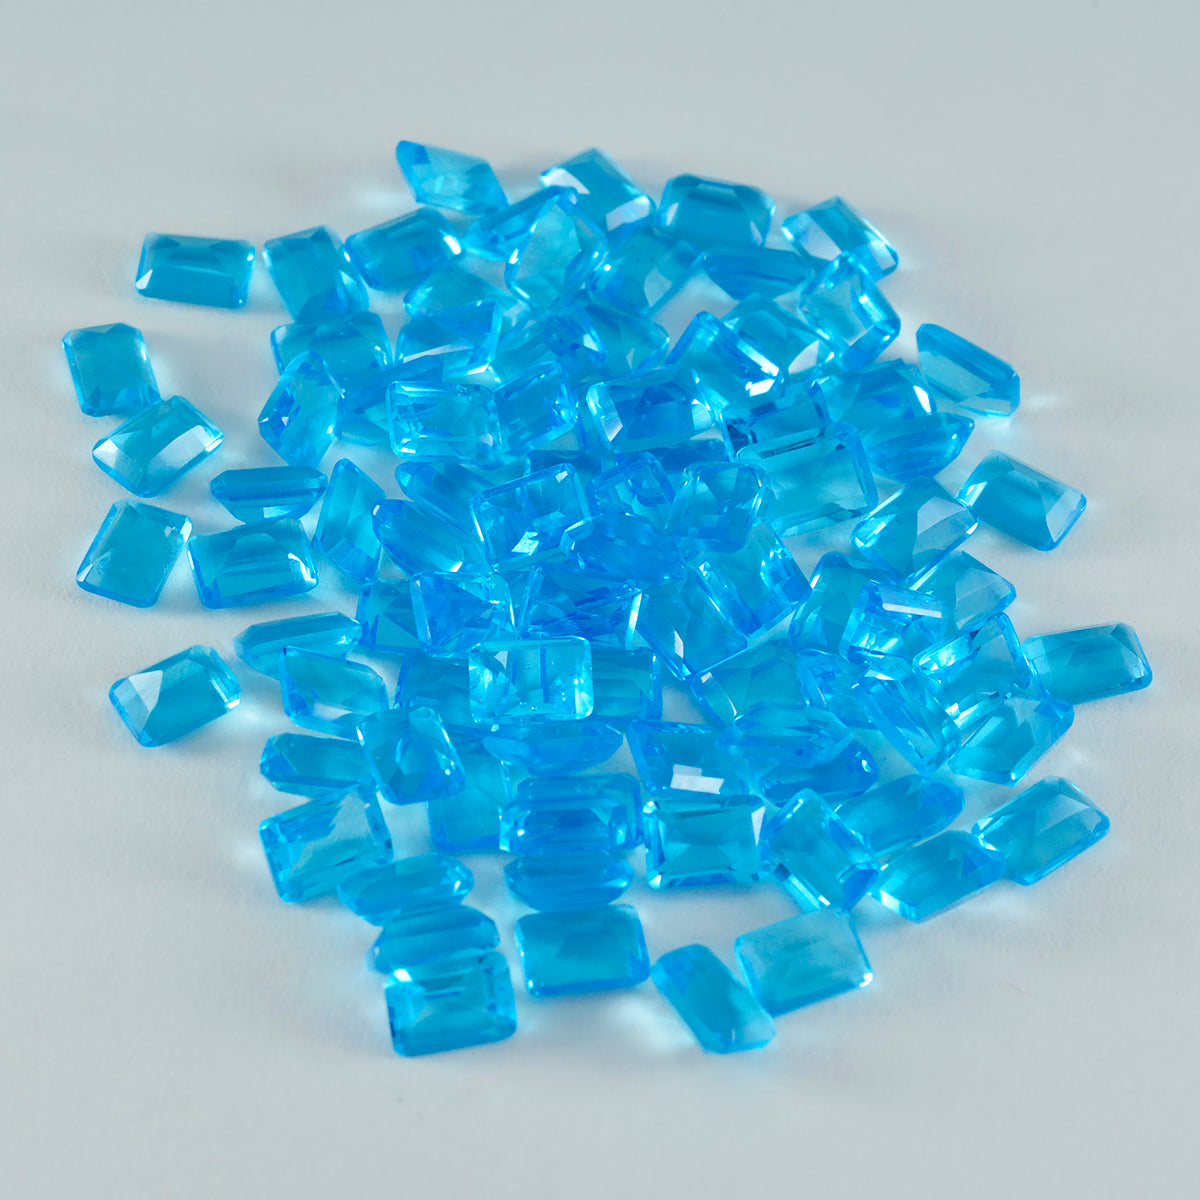 riyogems 1pc topaze bleue cz facettes 3x5 mm forme octogonale aa qualité pierre précieuse en vrac